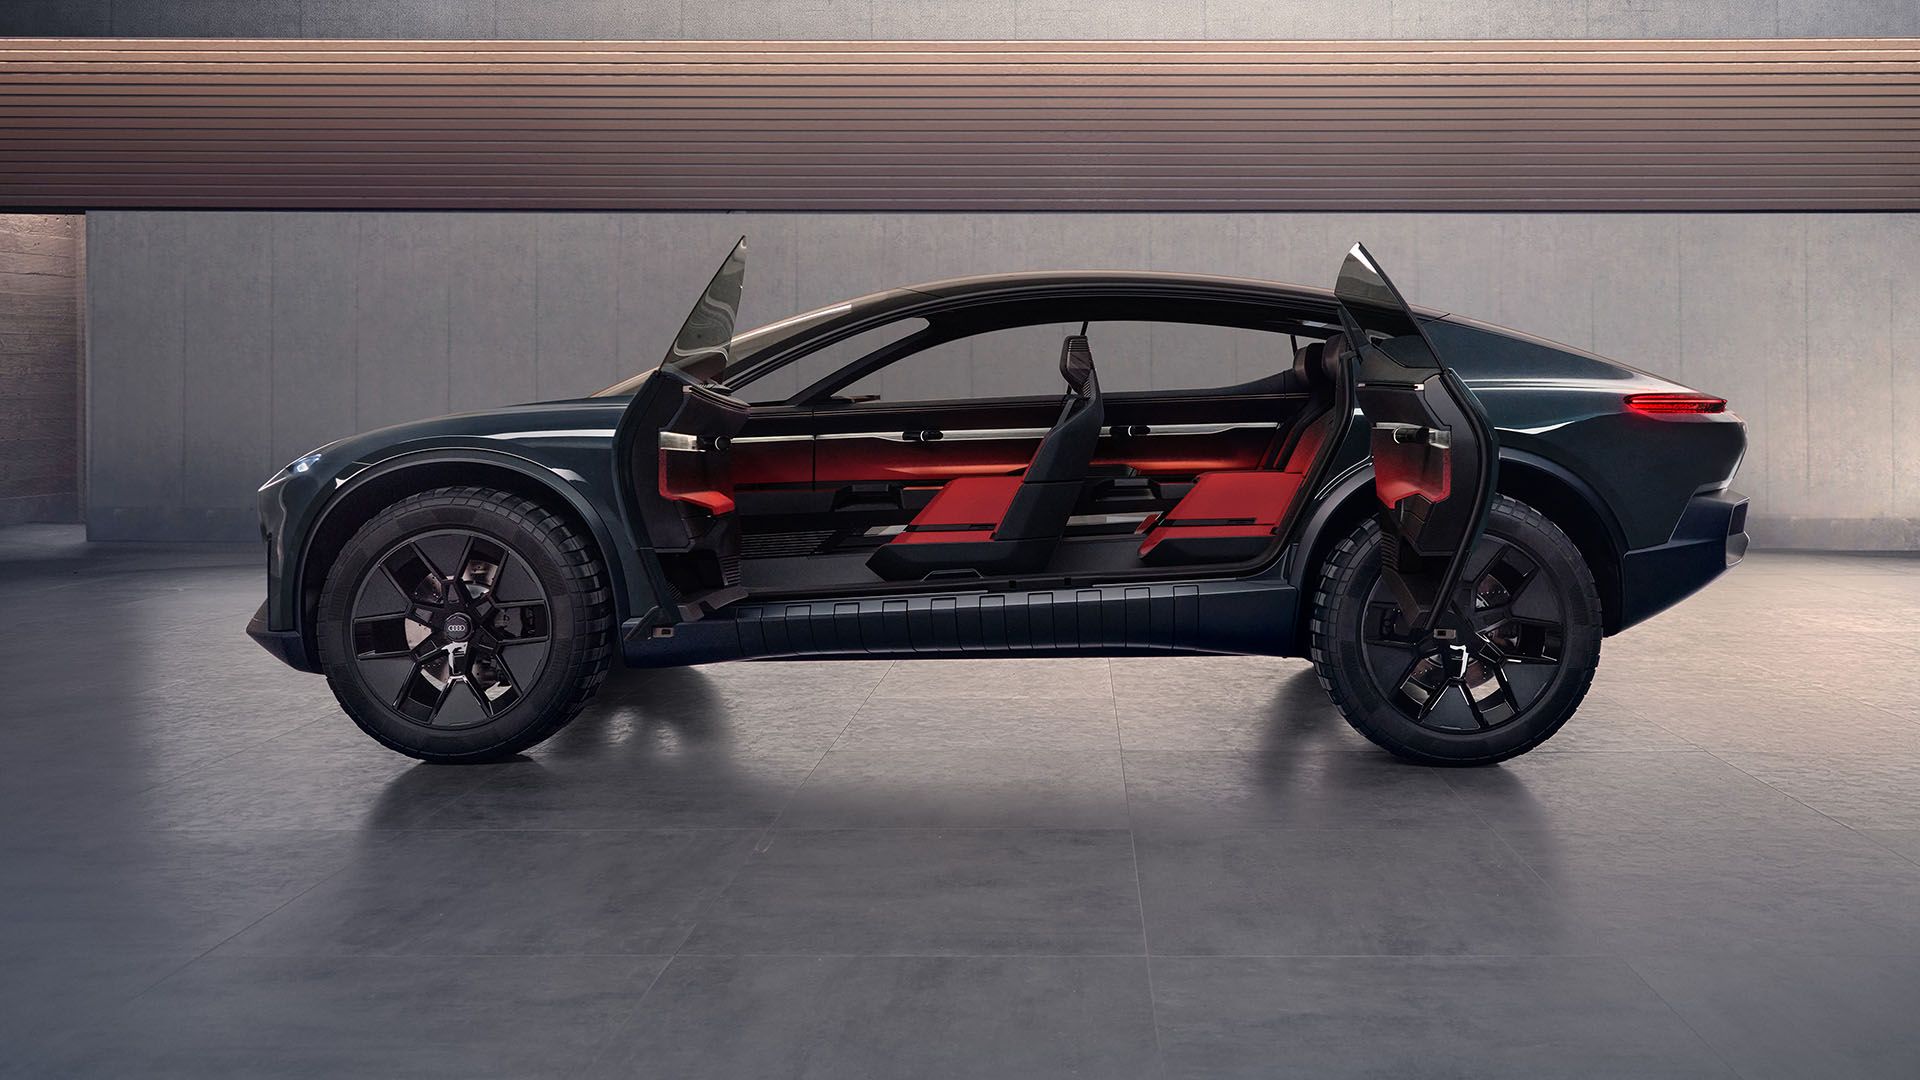 Les portes de l'Audi activesphere concept sont ouvertes et permettent de voir l'intérieur du véhicule.